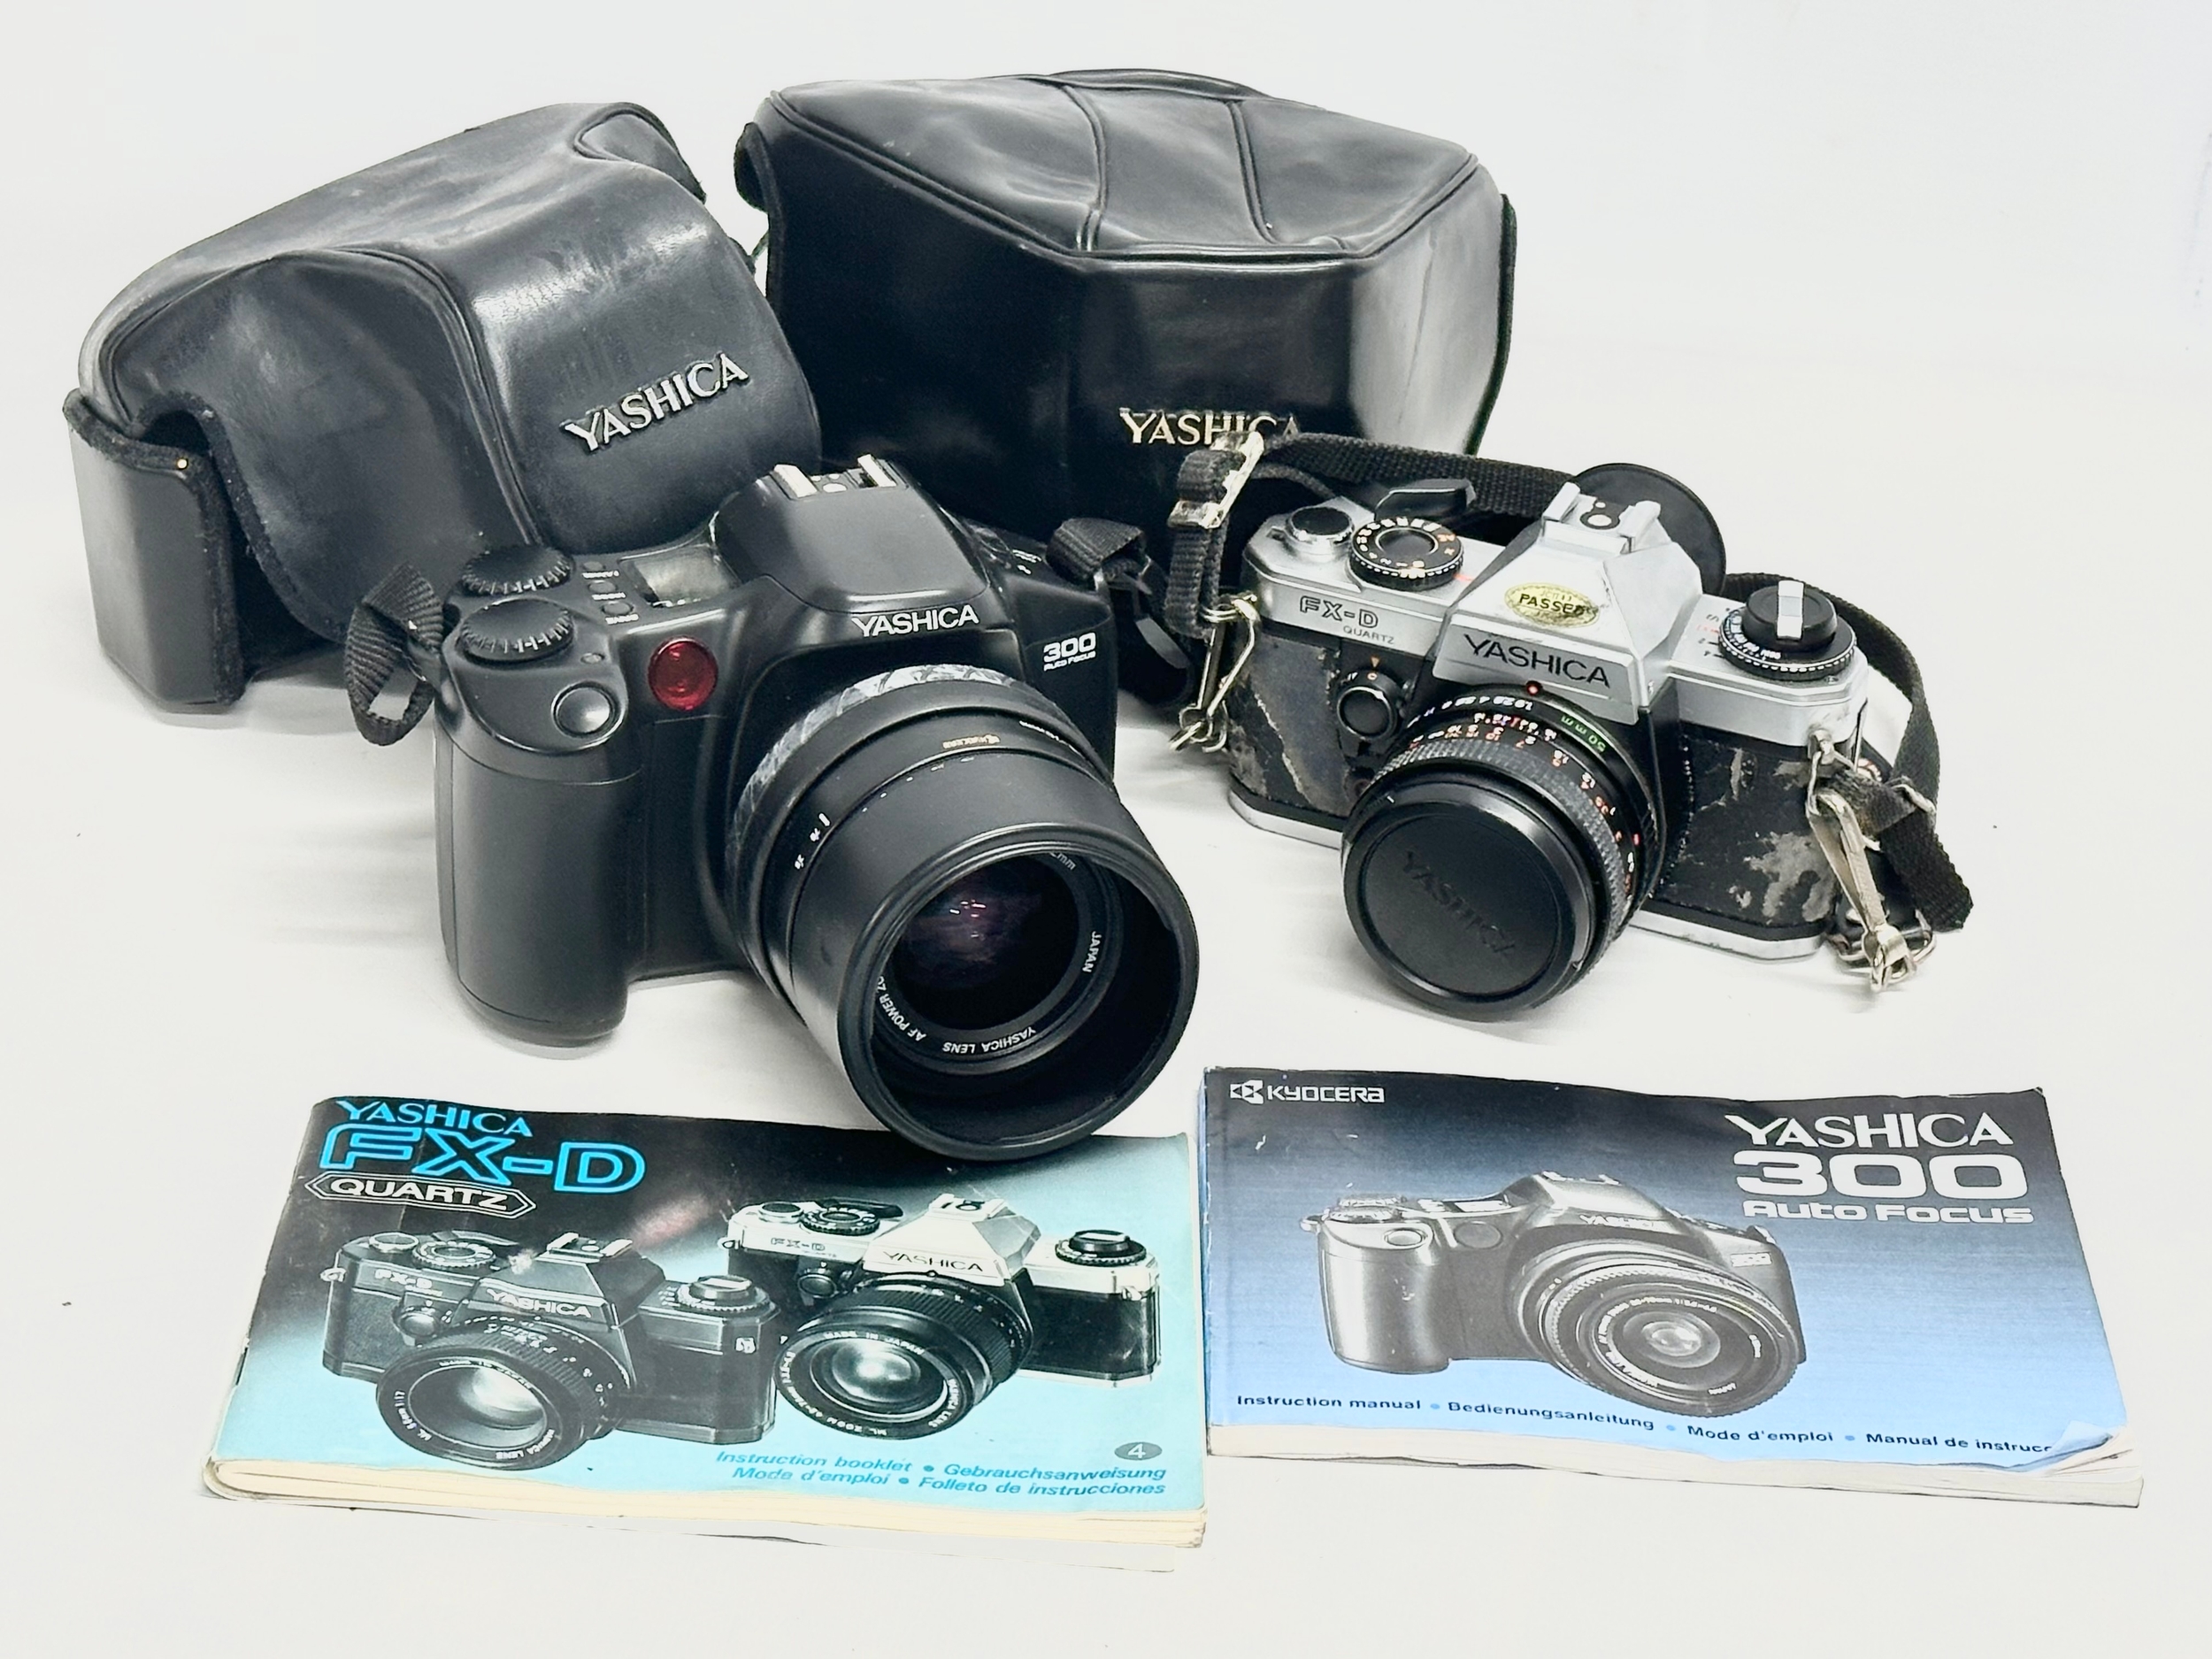 2 Yashica cameras. A Yashica 300 Auto Focus camera with case and book. A Yashica FX-D Quartz